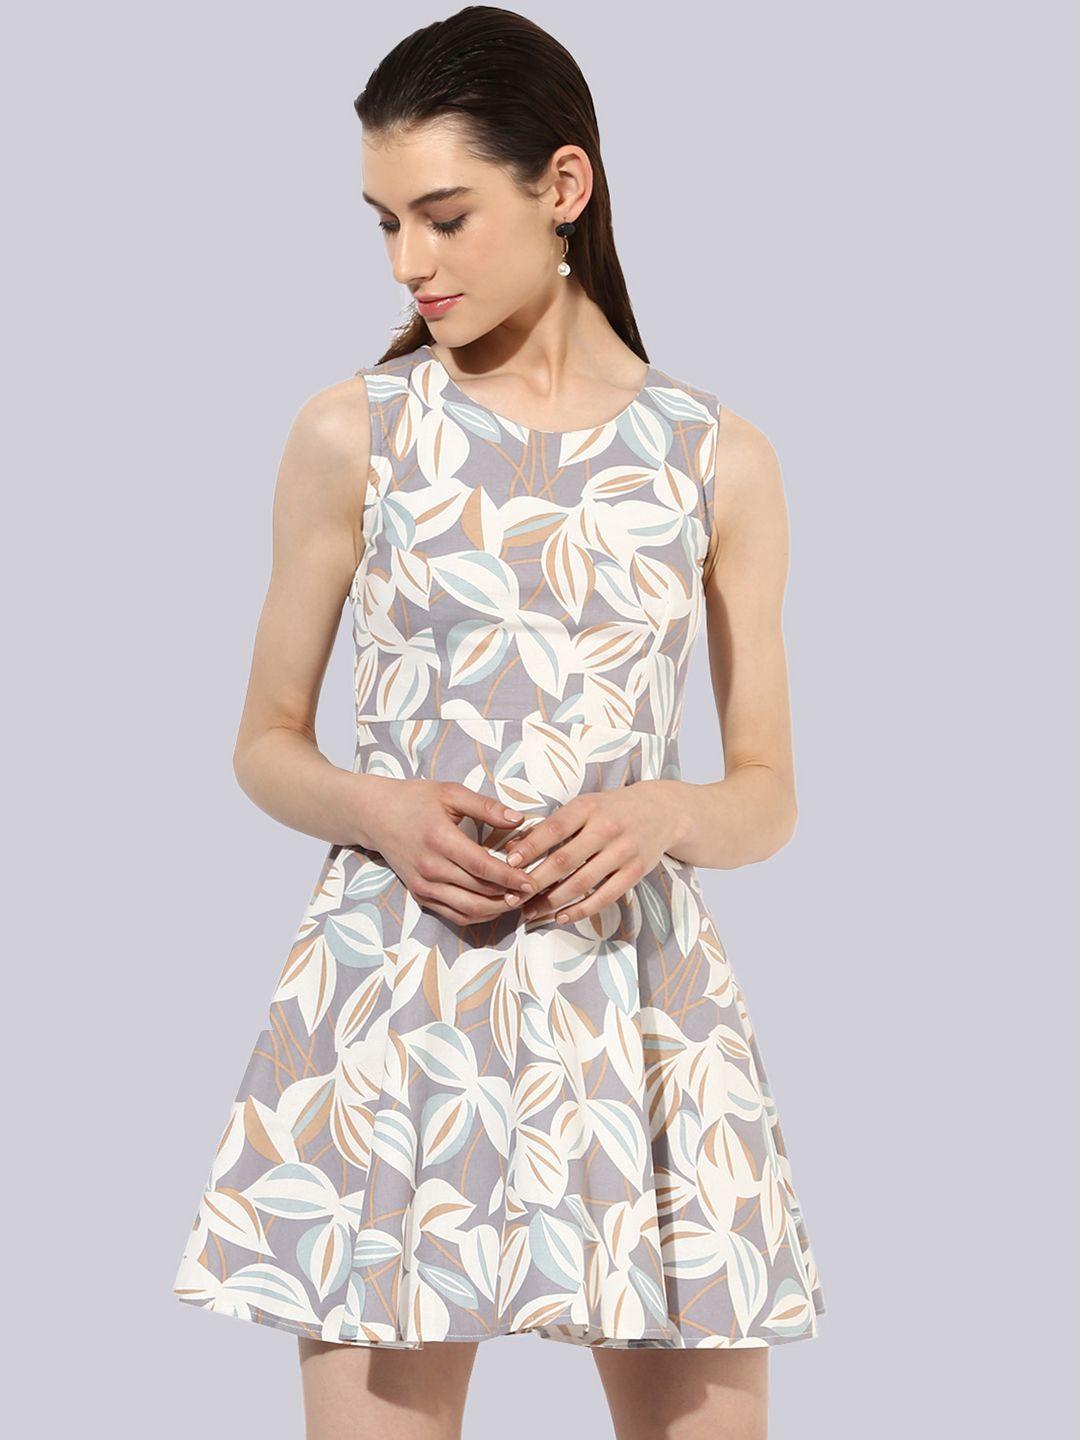 kleio floral mini dress